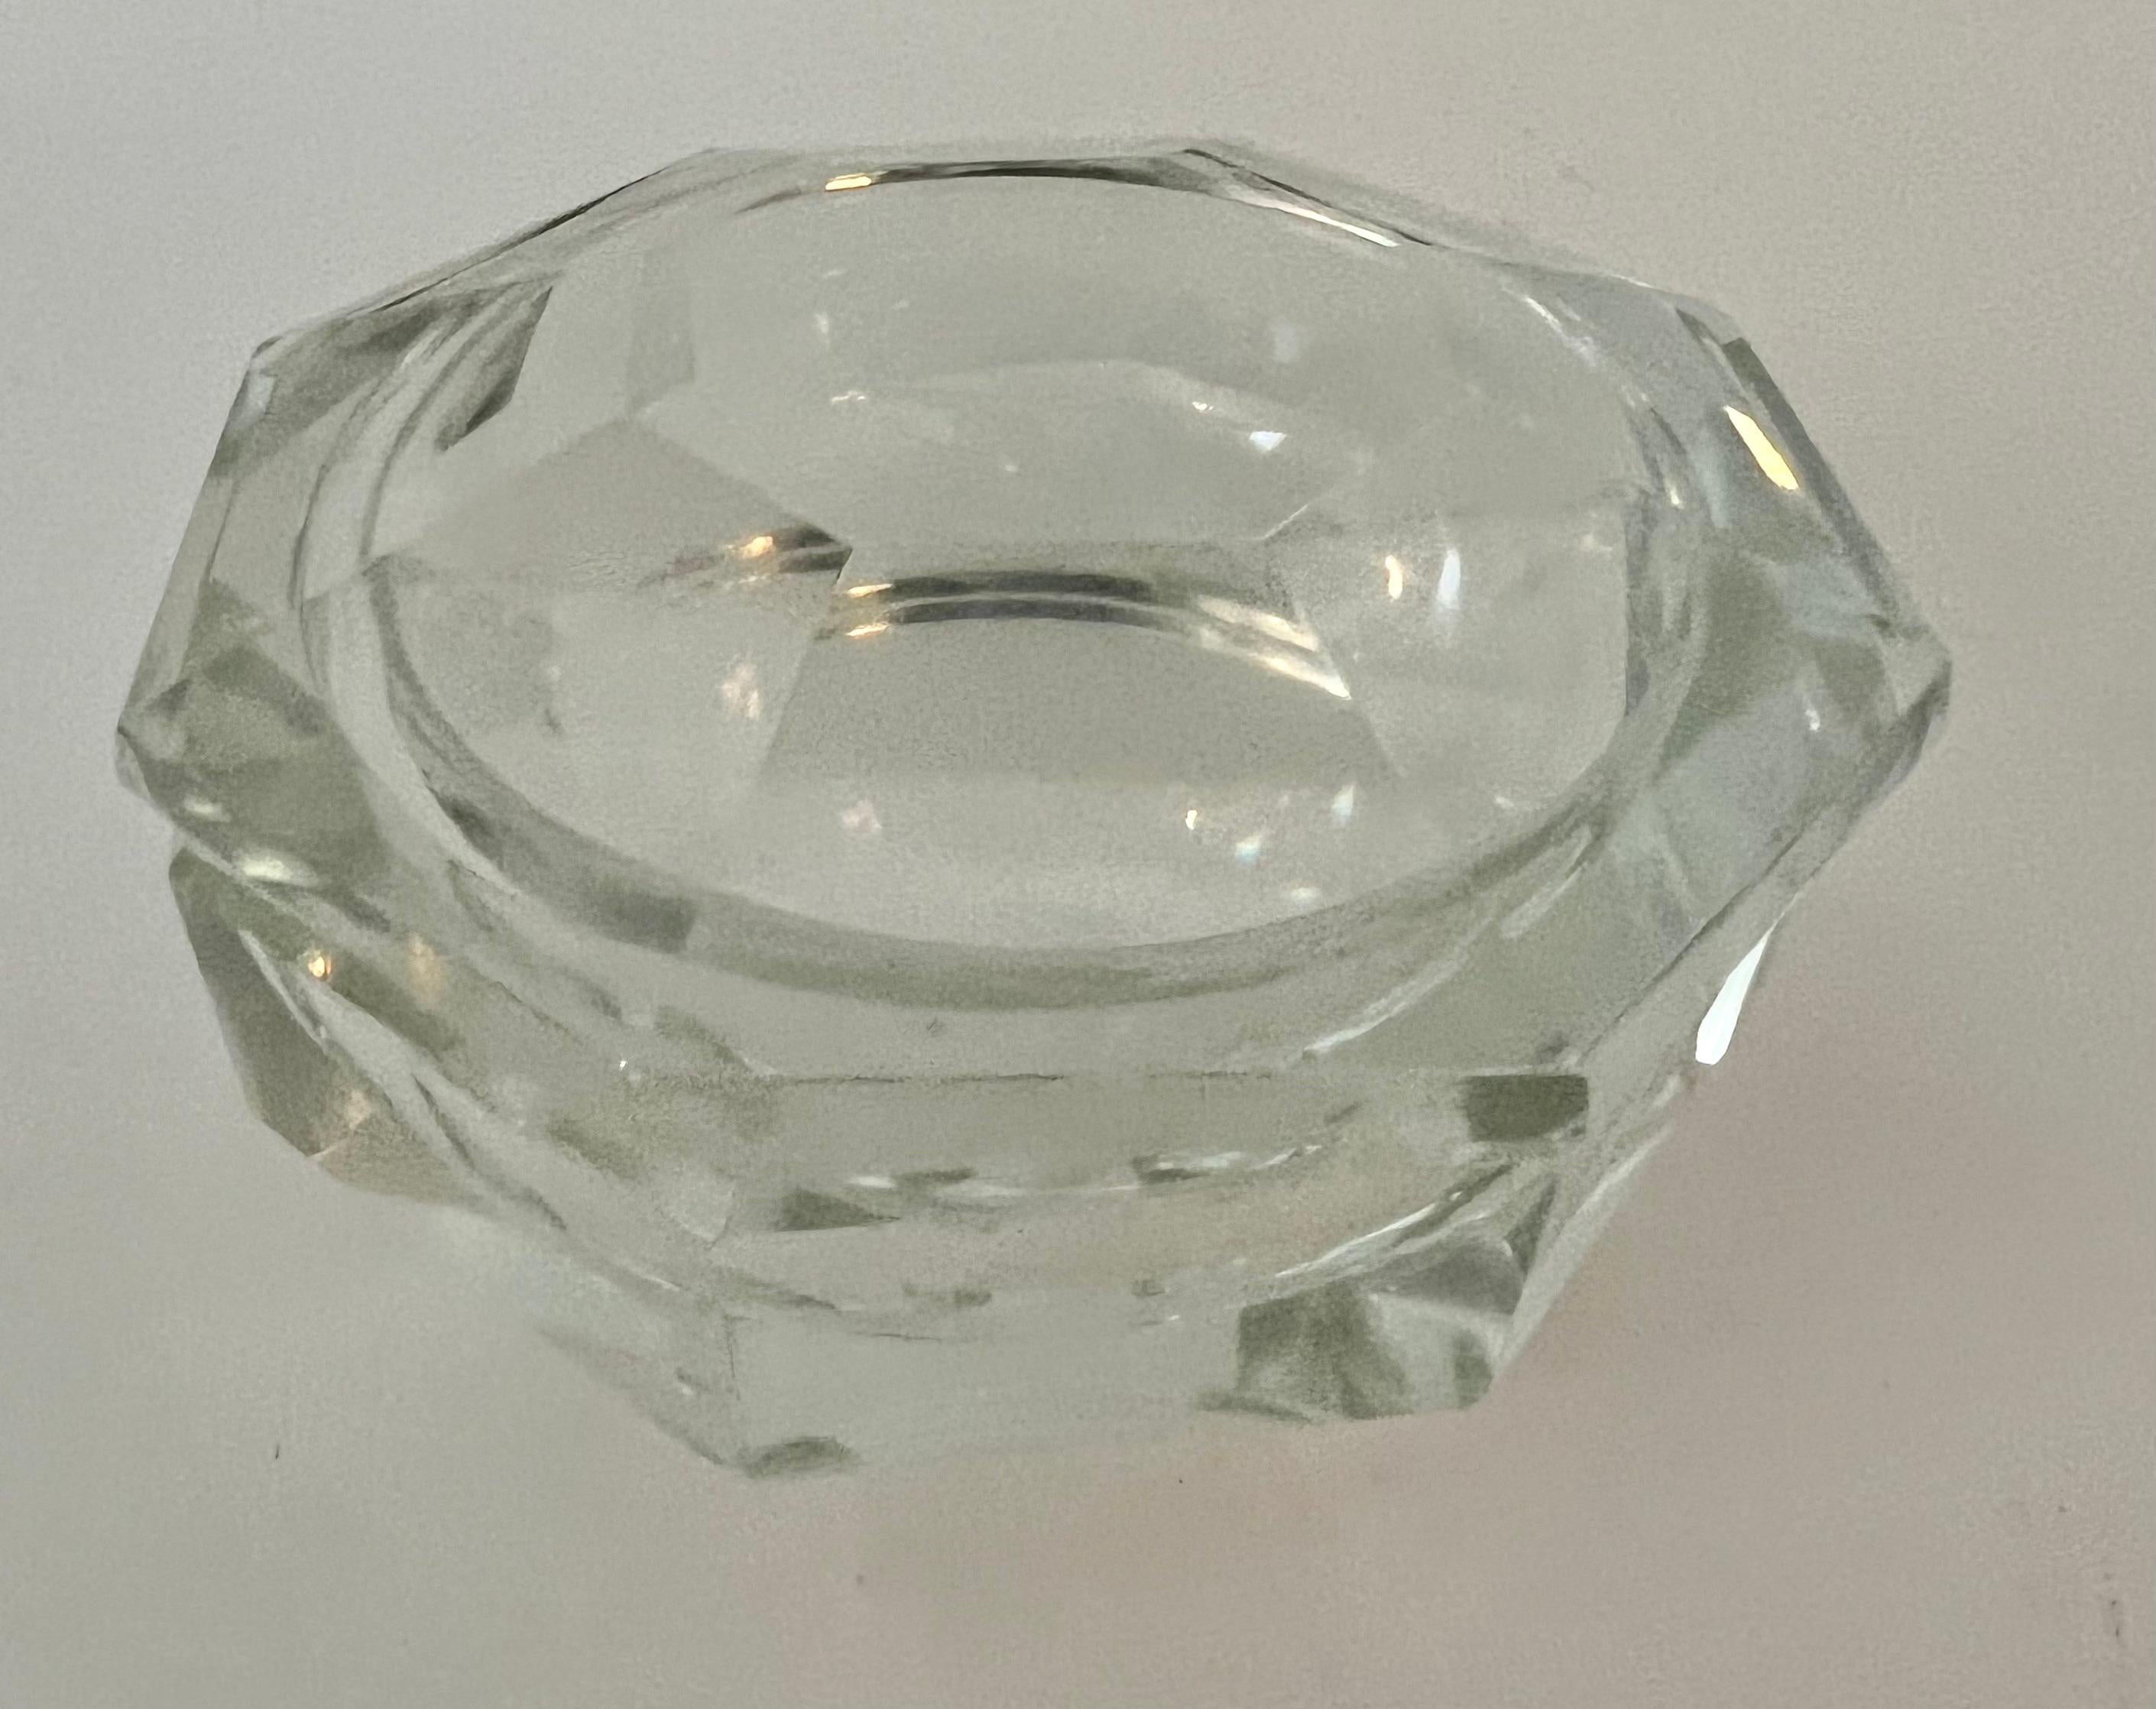 Eine achteckige Kristallschale mit achteckigem Deckel. Ein sehr einzigartiges Design und ein Kompliment für jeden Cocktailtisch - das Stück ist ein schönes Dekorationsobjekt oder eignet sich gut als Schale für Süßigkeiten und Nüsse. Auch auf dem